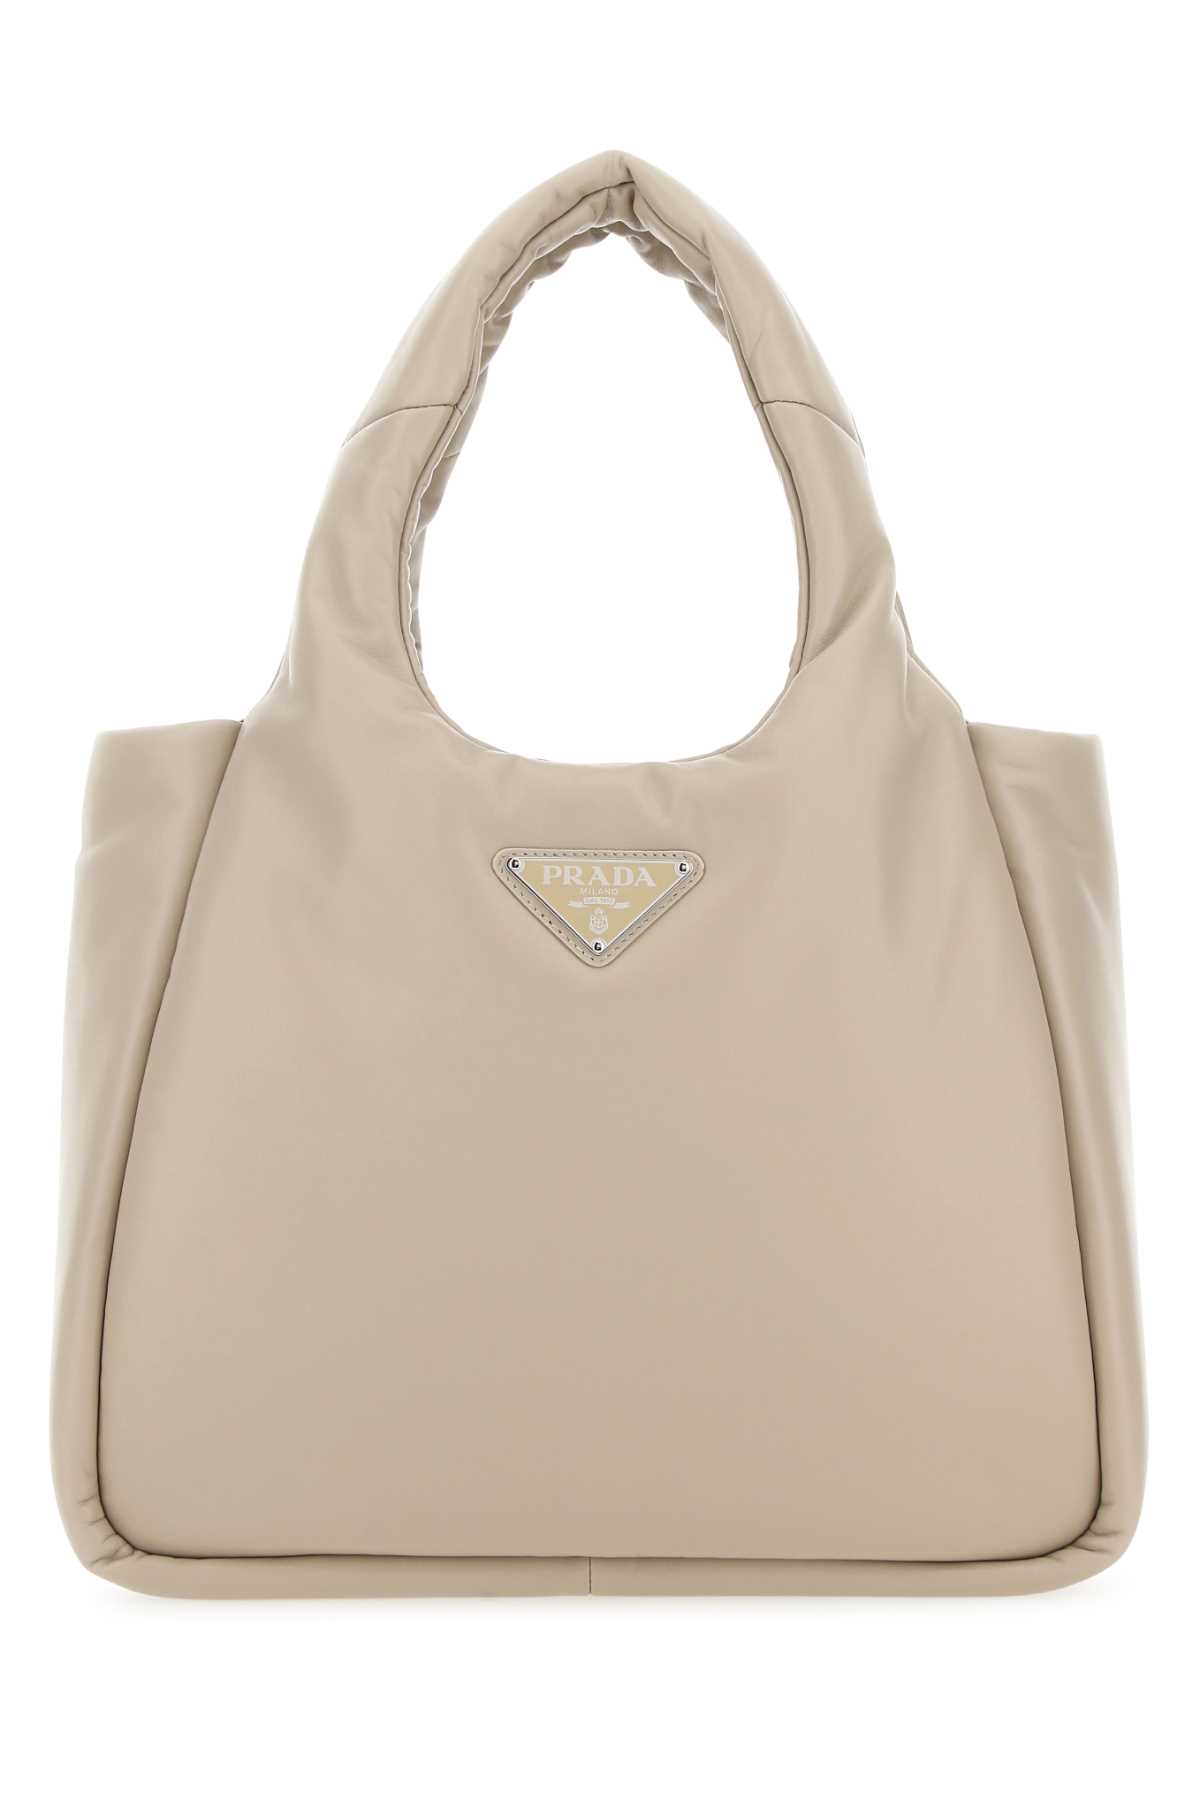 Prada Sand Nappa Leather Handbag